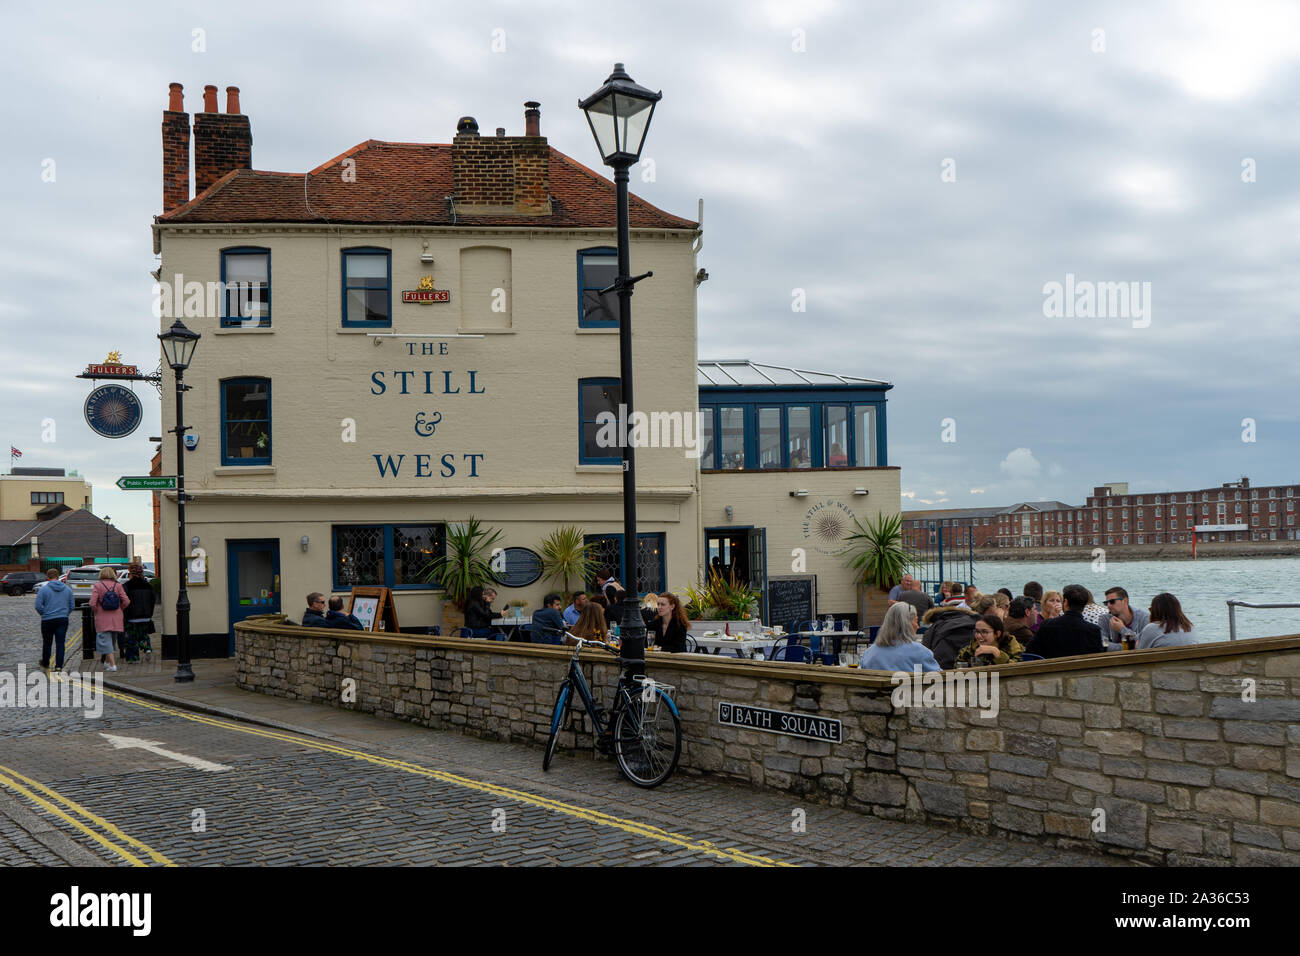 L'ancora e west pub nel vecchio Portsmouth, Hampshire con frequentatori di pub per bere il giardino della birra Foto Stock